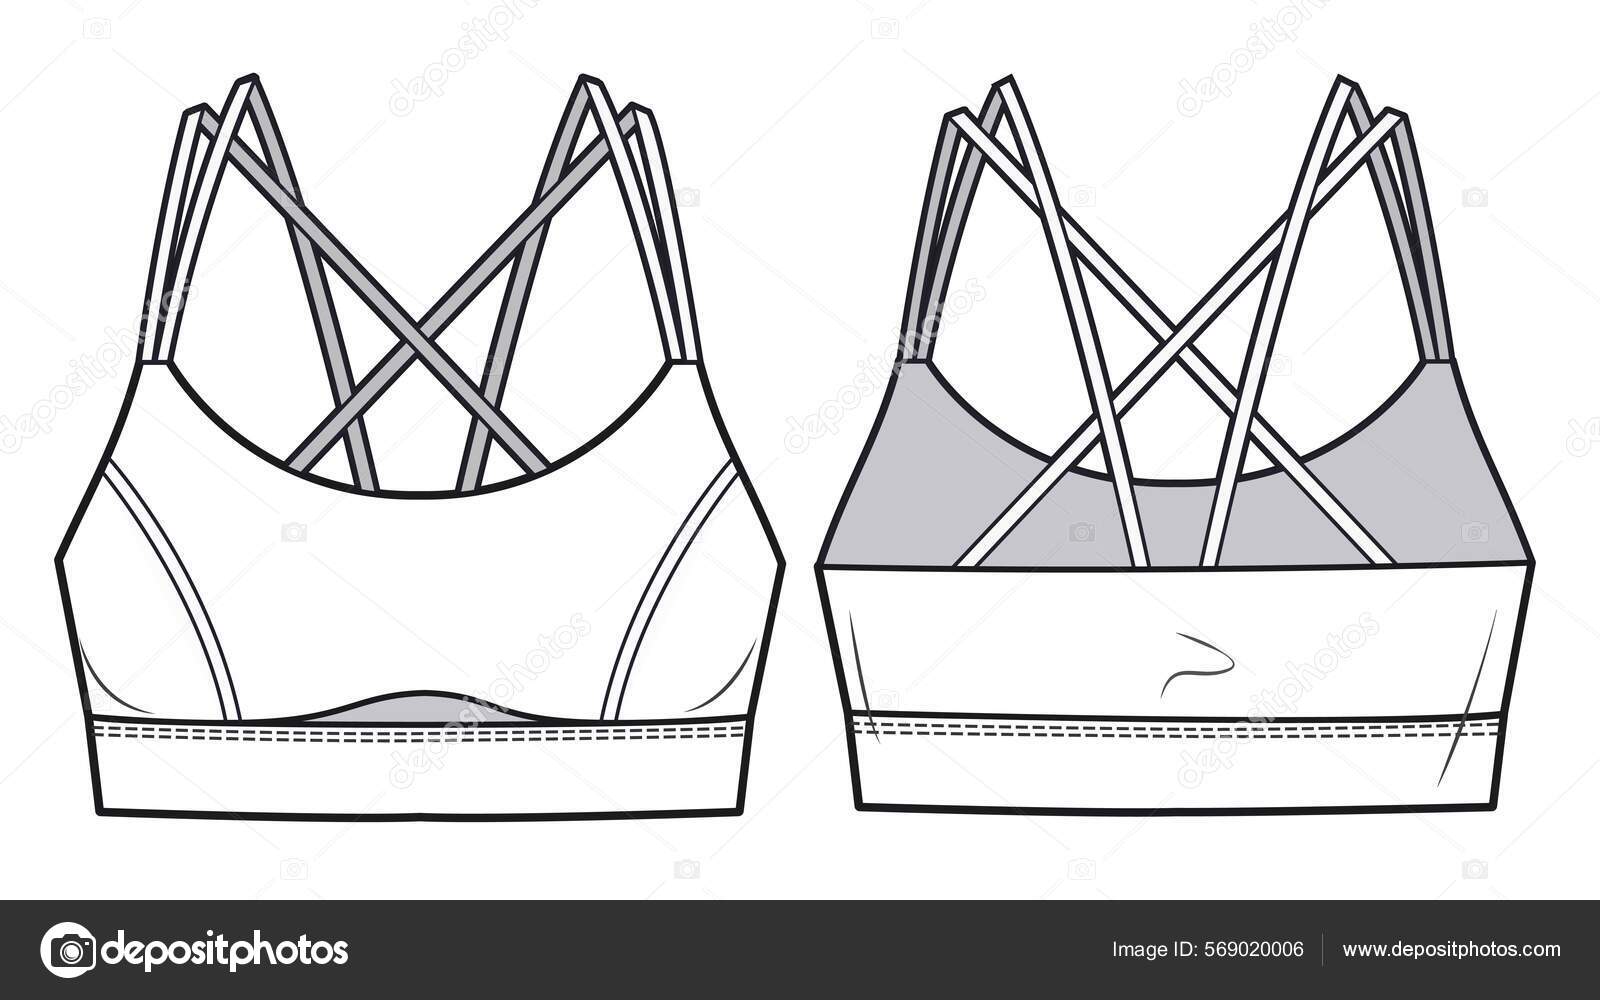 Girl's Sport Bra Fashion Flat Sketch Template Women's Active Wear